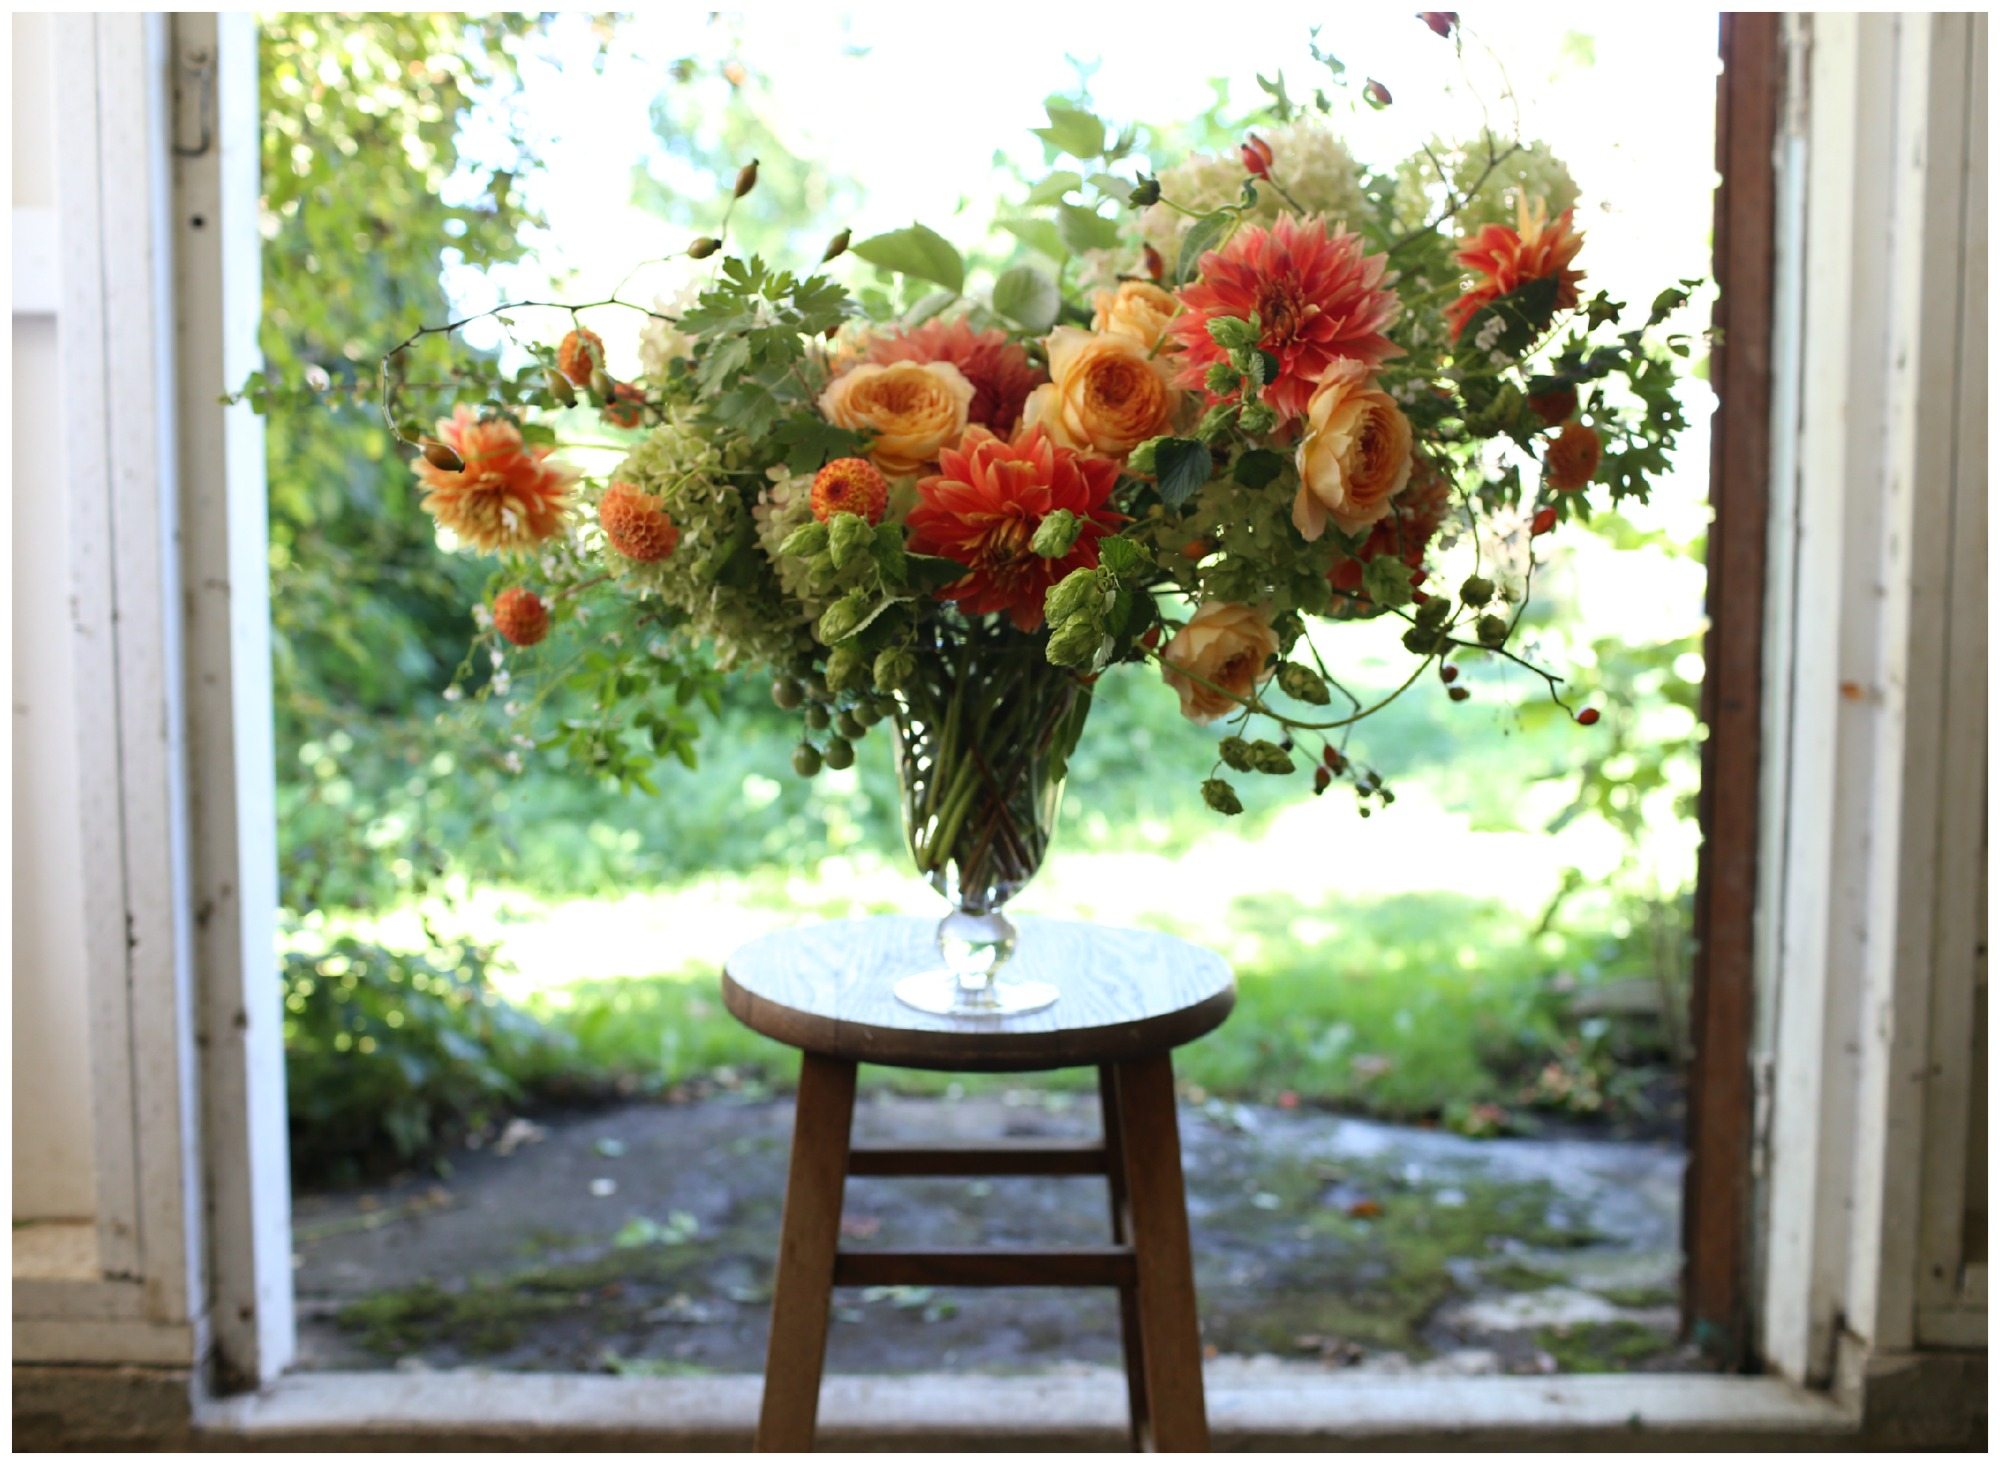 A flower arrangement on a stool